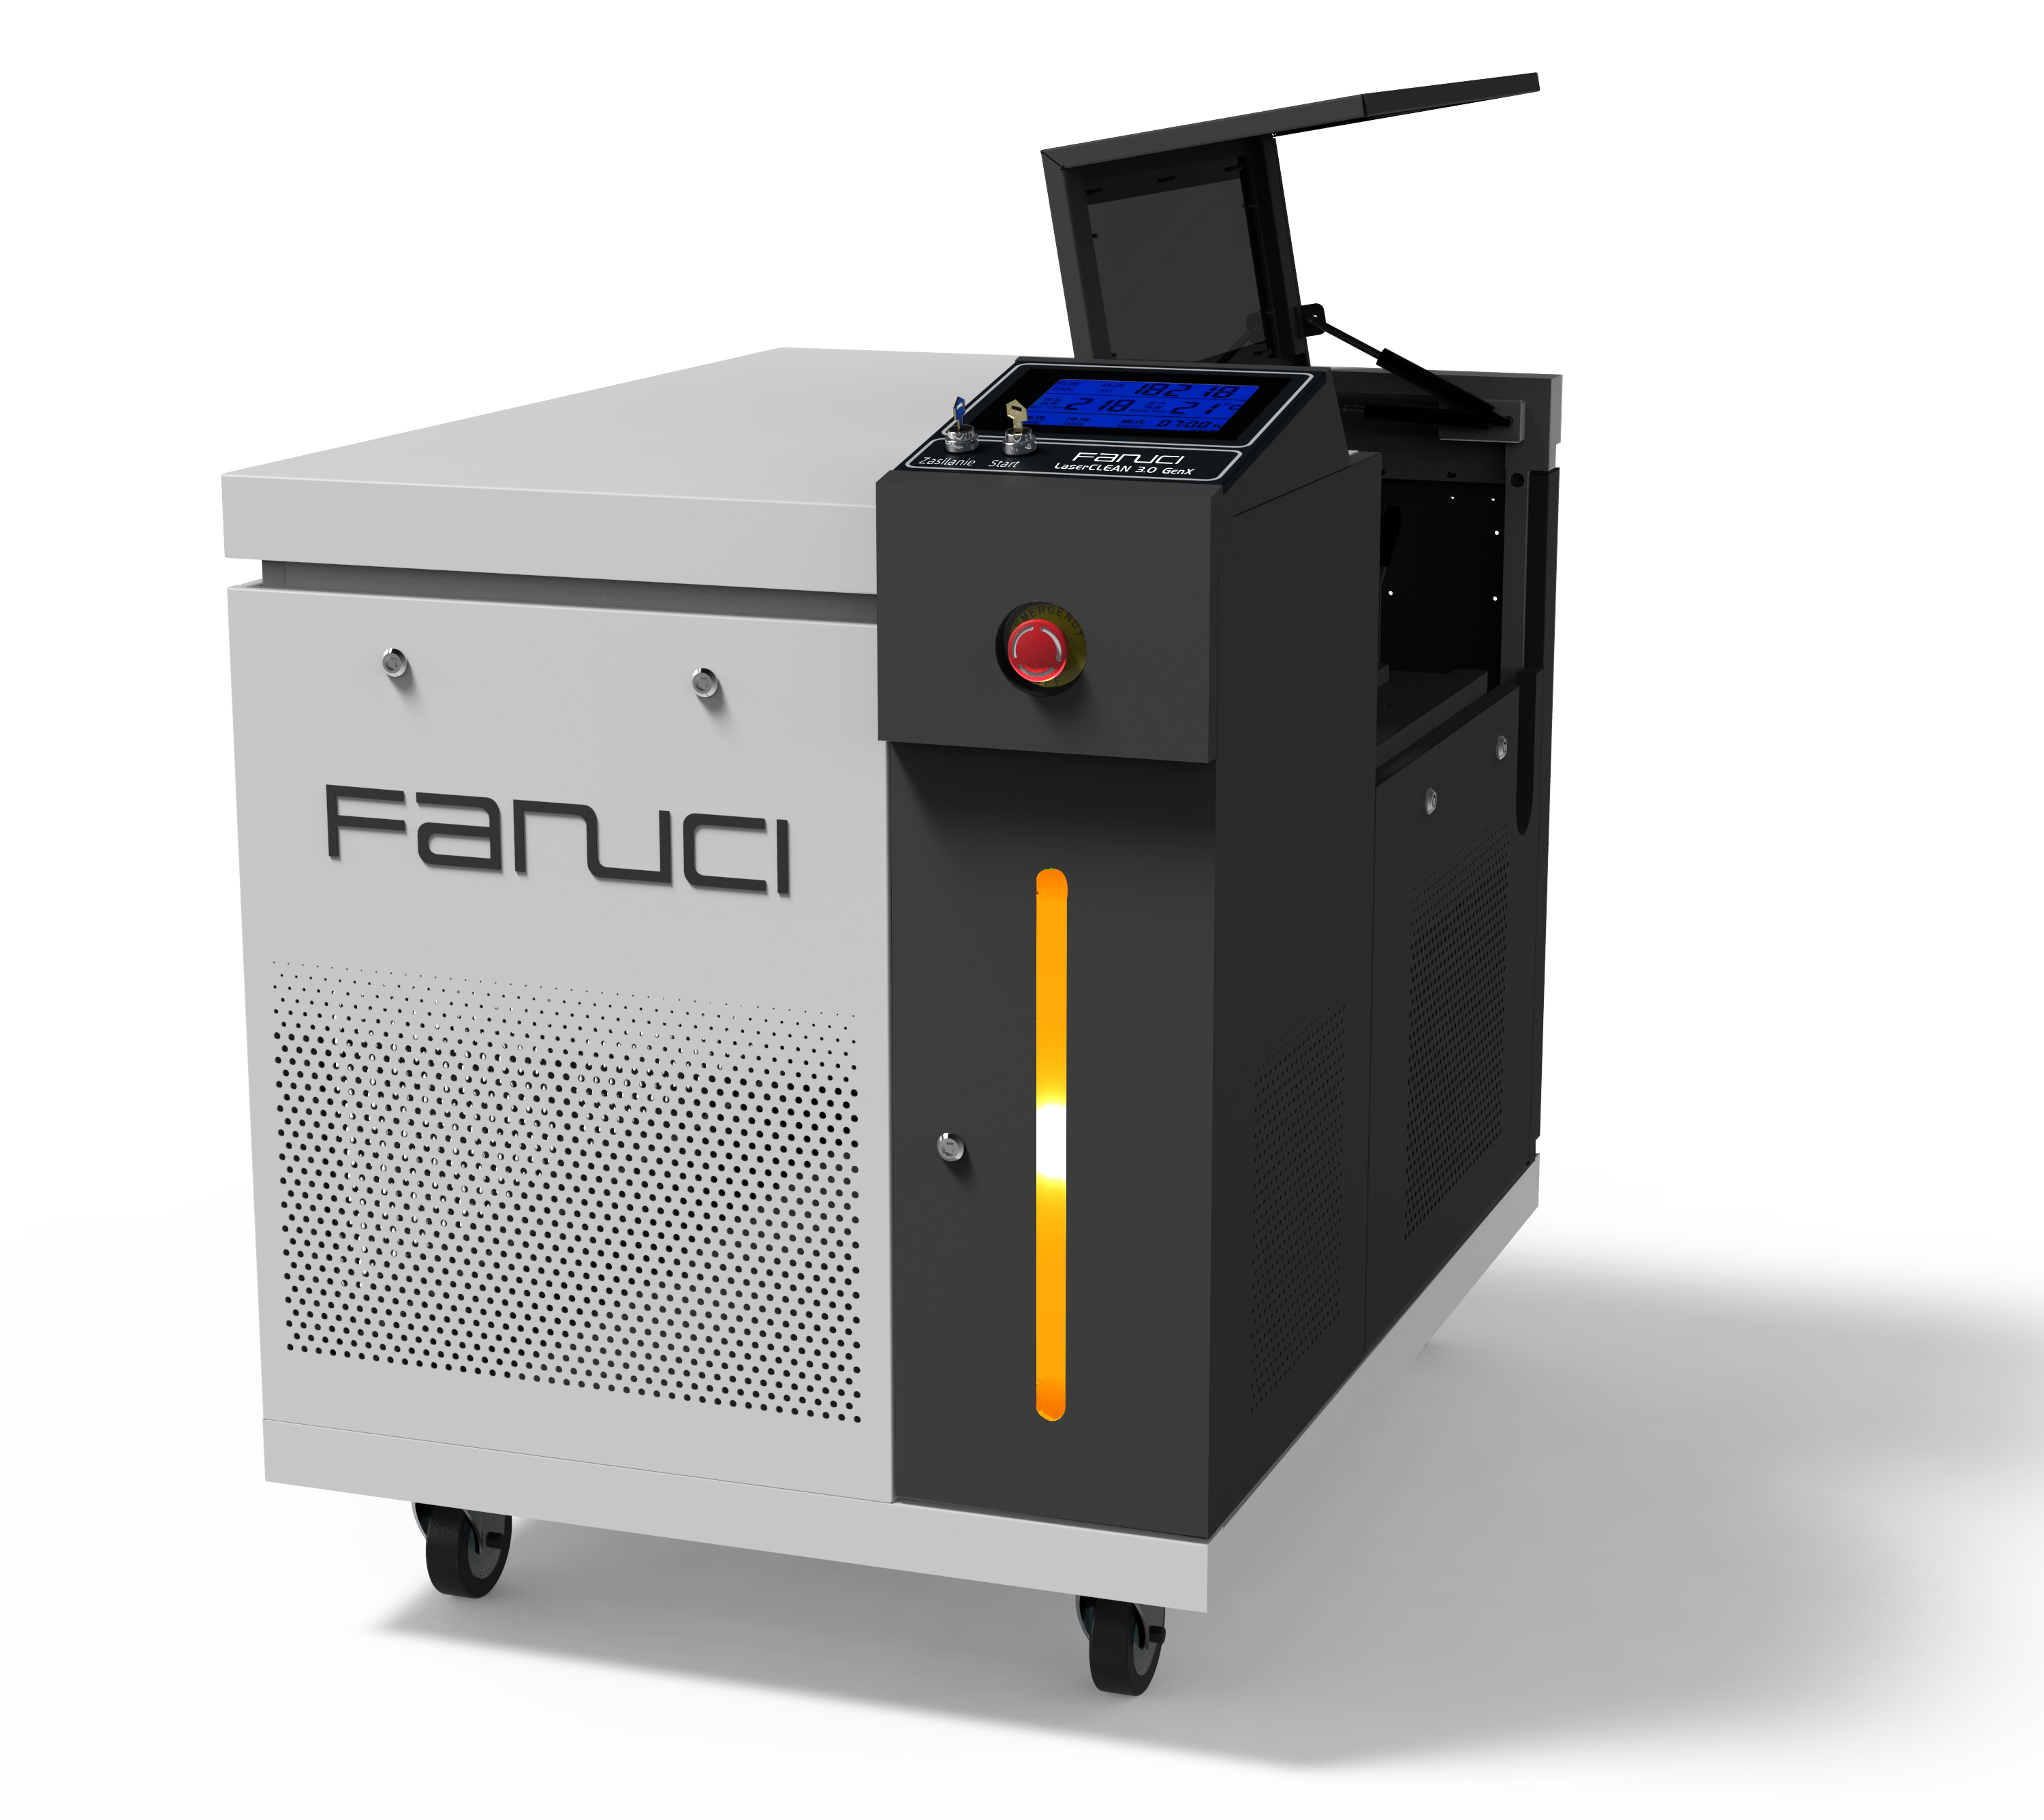 FANUCI® Pro compacte laserlasmachine vier in één wordt naar Europa verzonden